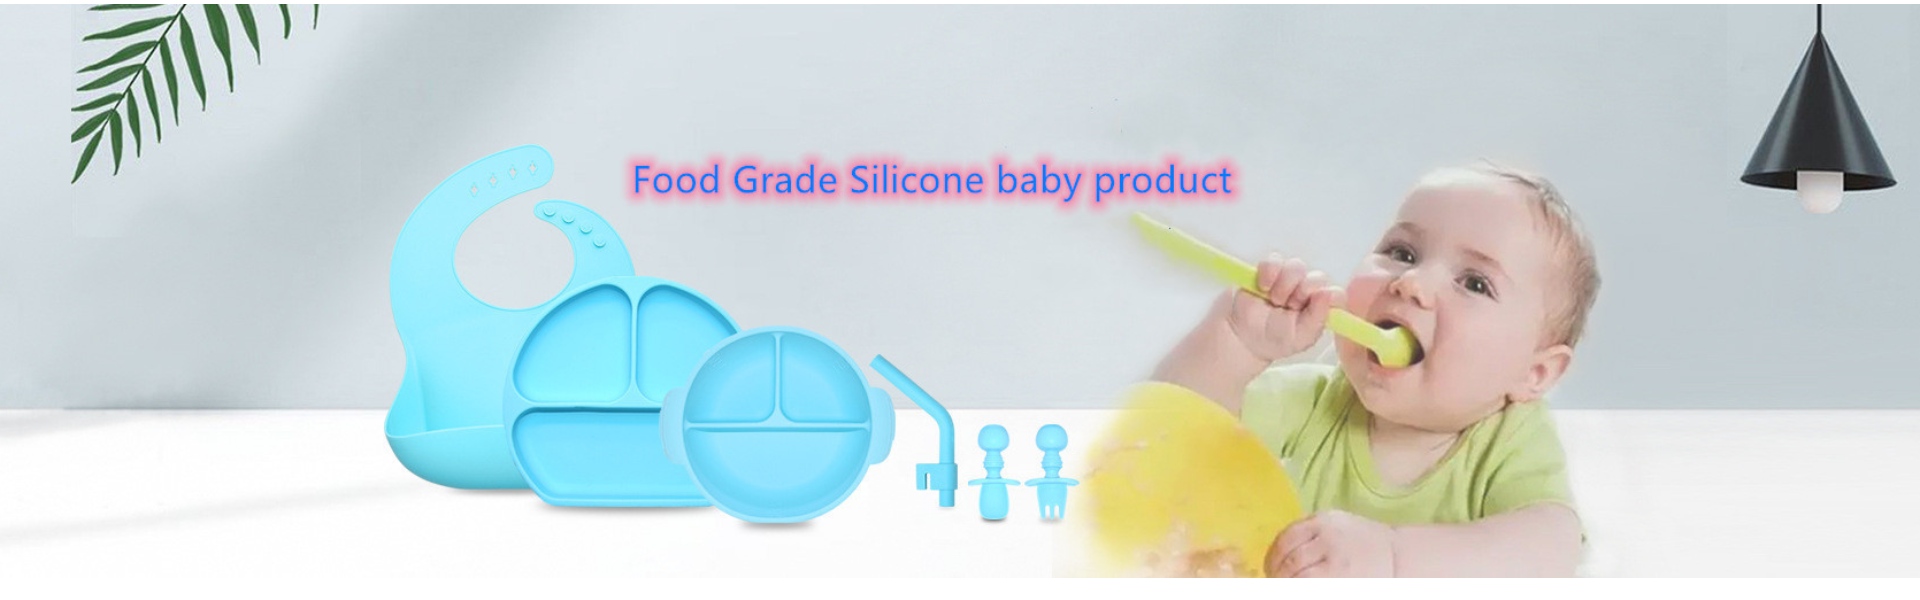 силиконови кухненски прибори, силиконова ледена отливка, силиконов бебешки продукт,Huizhou Calipolo accessory Ltd